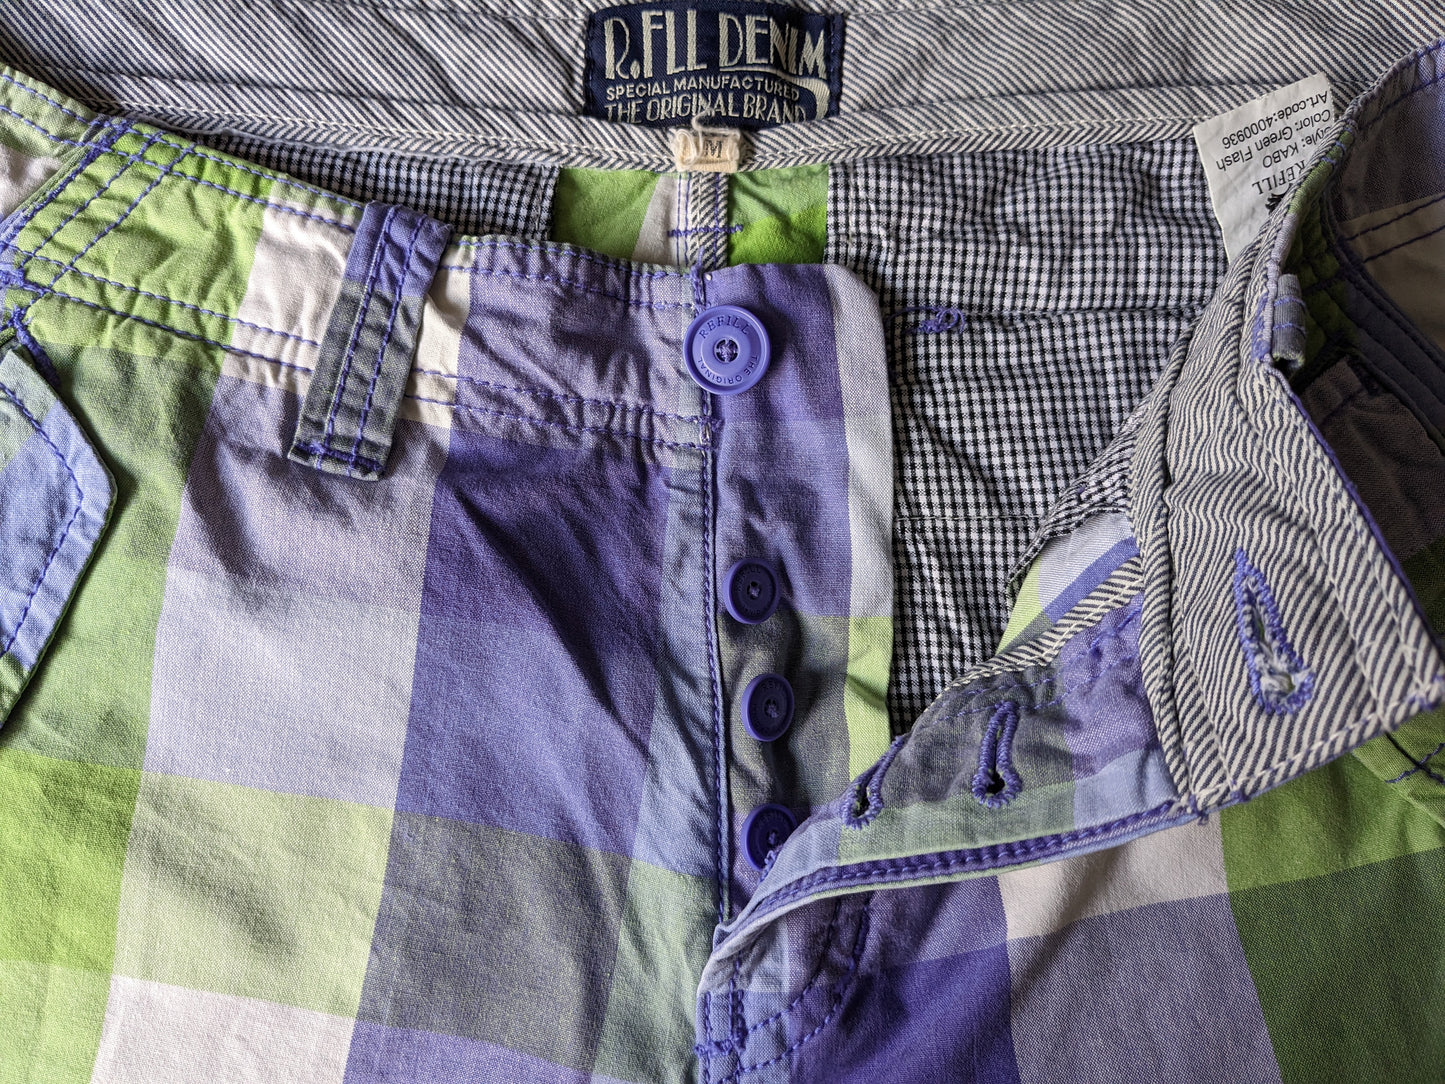 R. Filk Shorts di denim con borse. Bloccato bianco verde viola. Taglia M.